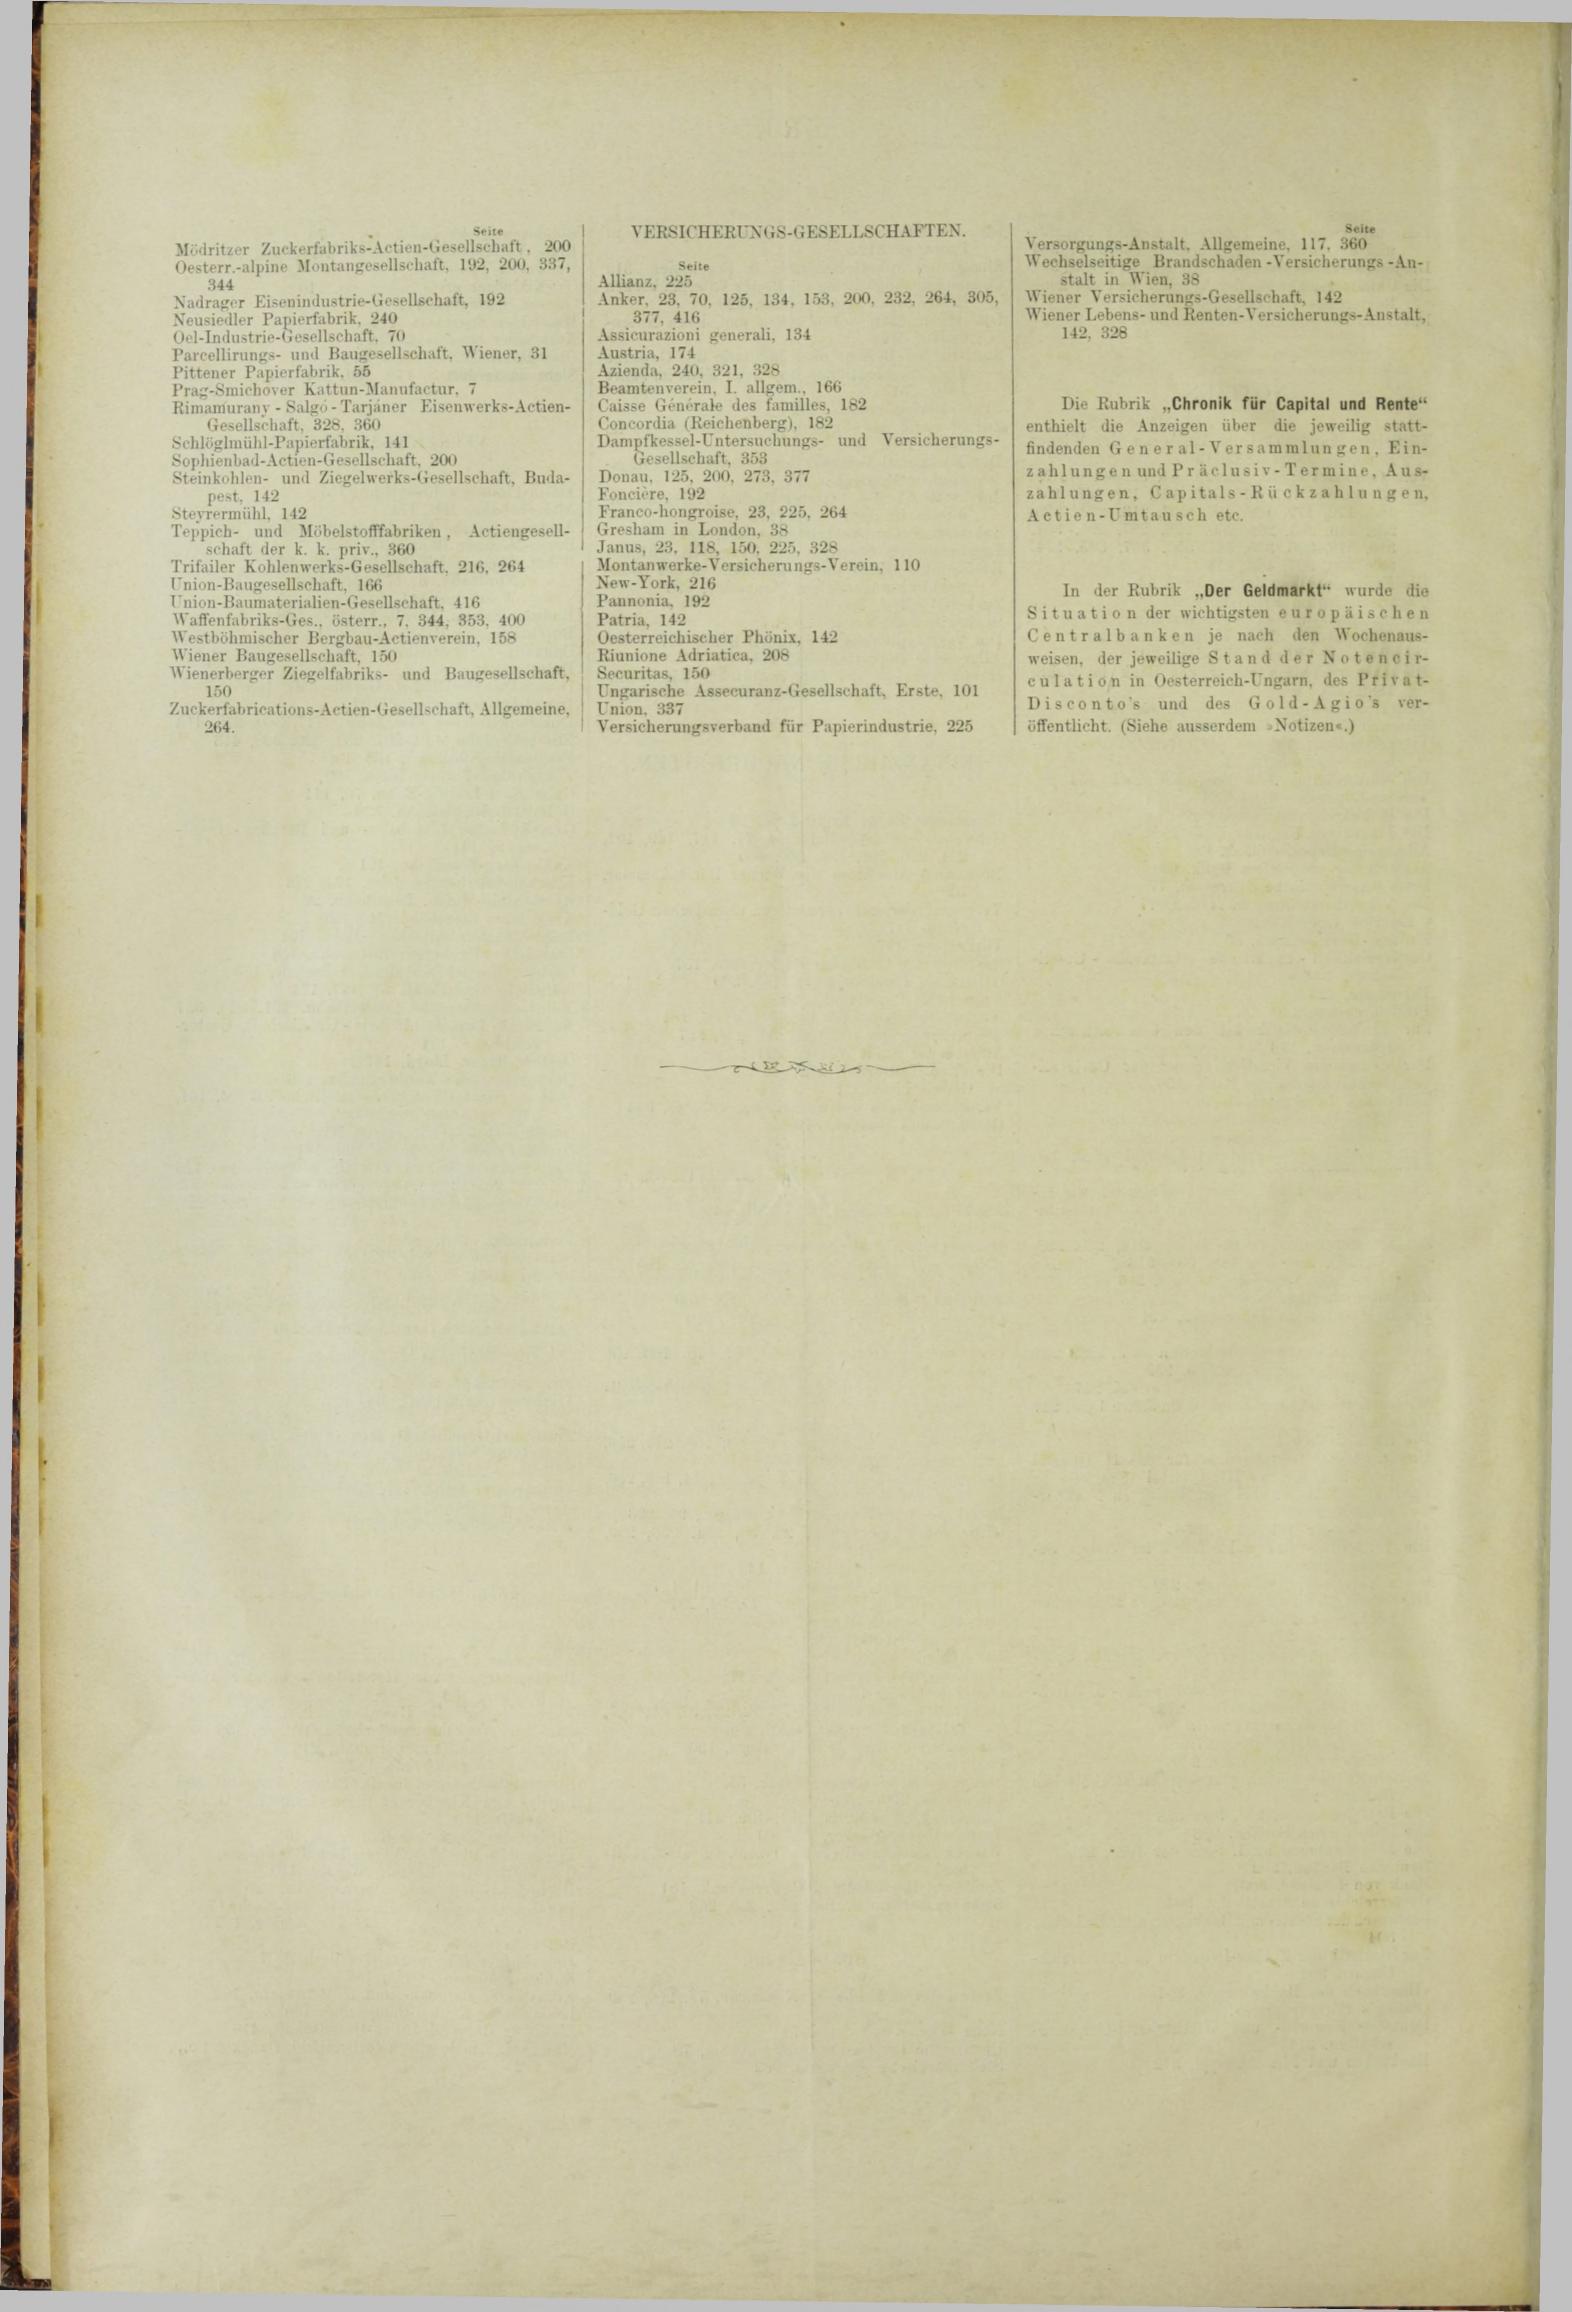 Der Tresor 06.12.1883 - Seite 12